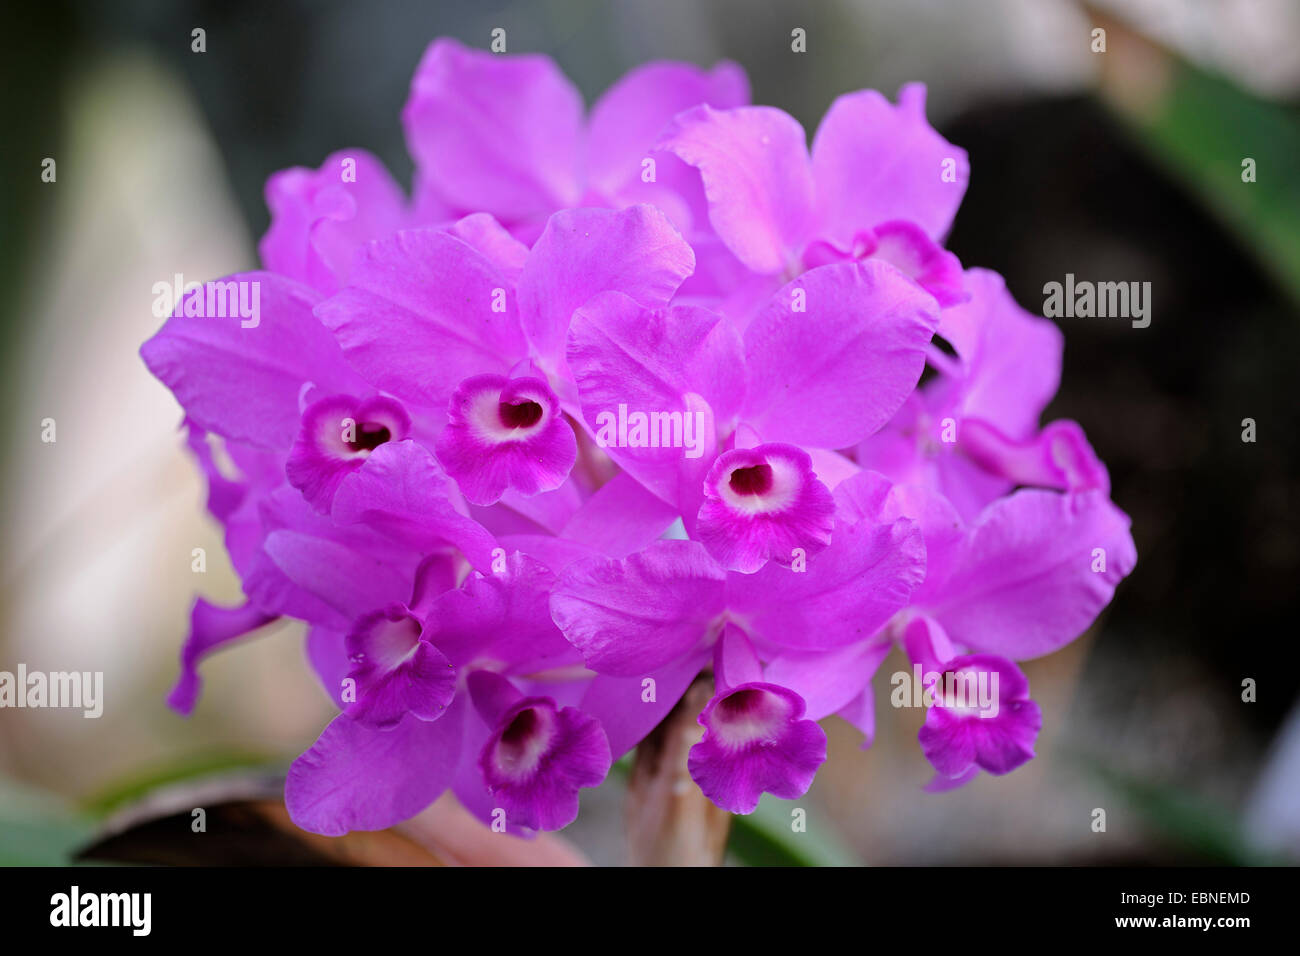 Cattleya (Cattleya skinneri), flowers Stock Photo